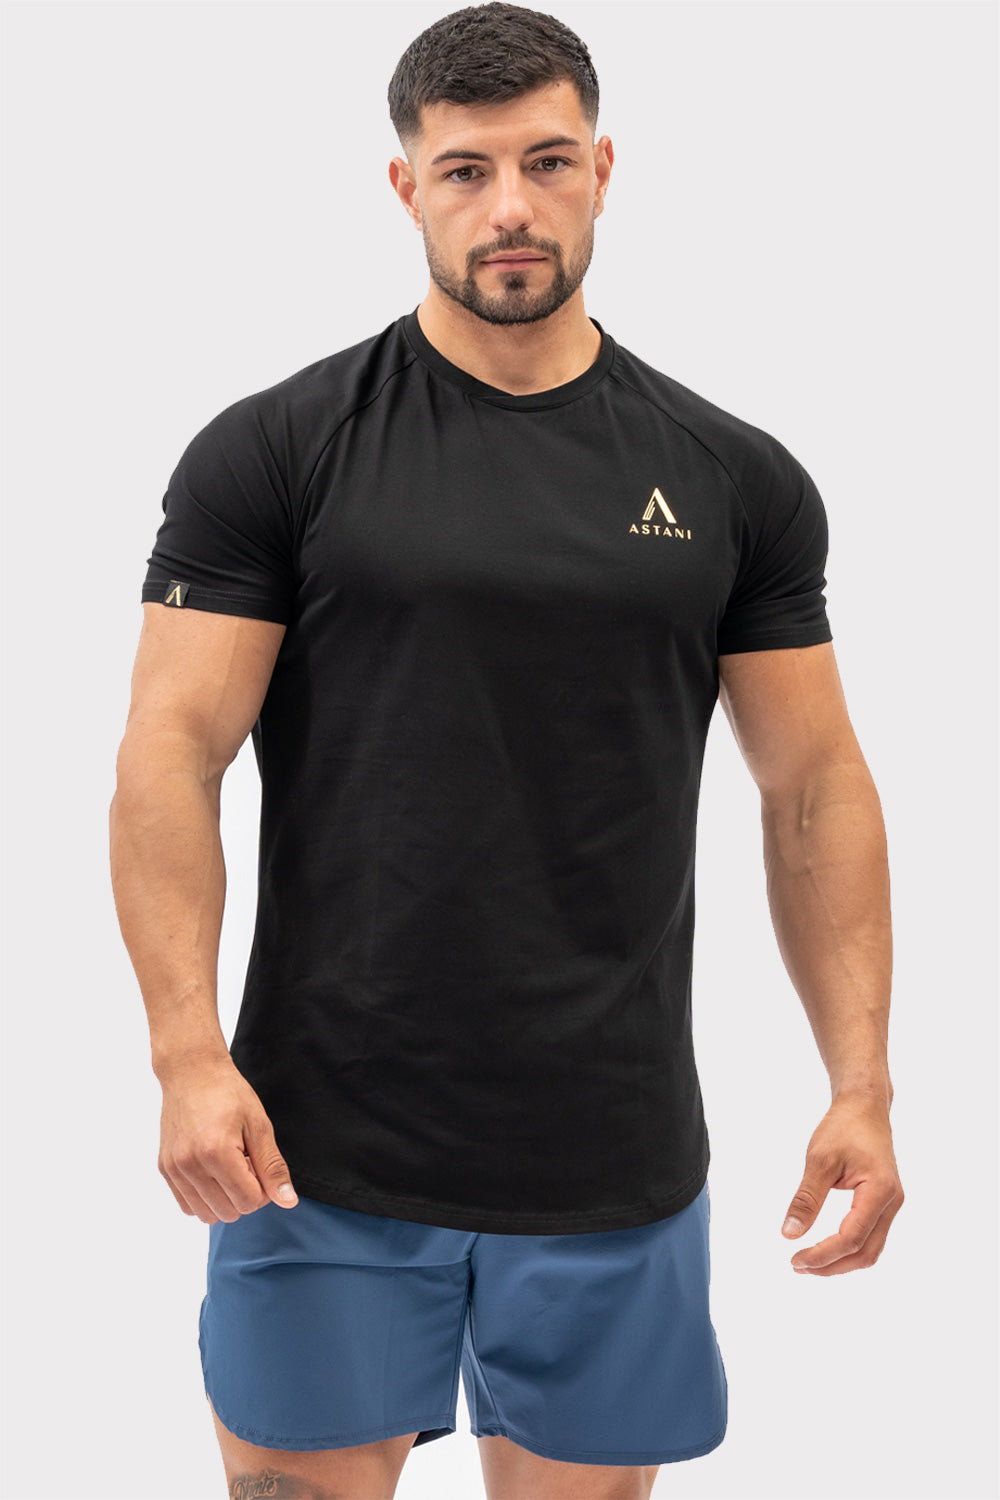 A CODE T-Shirt - Musta